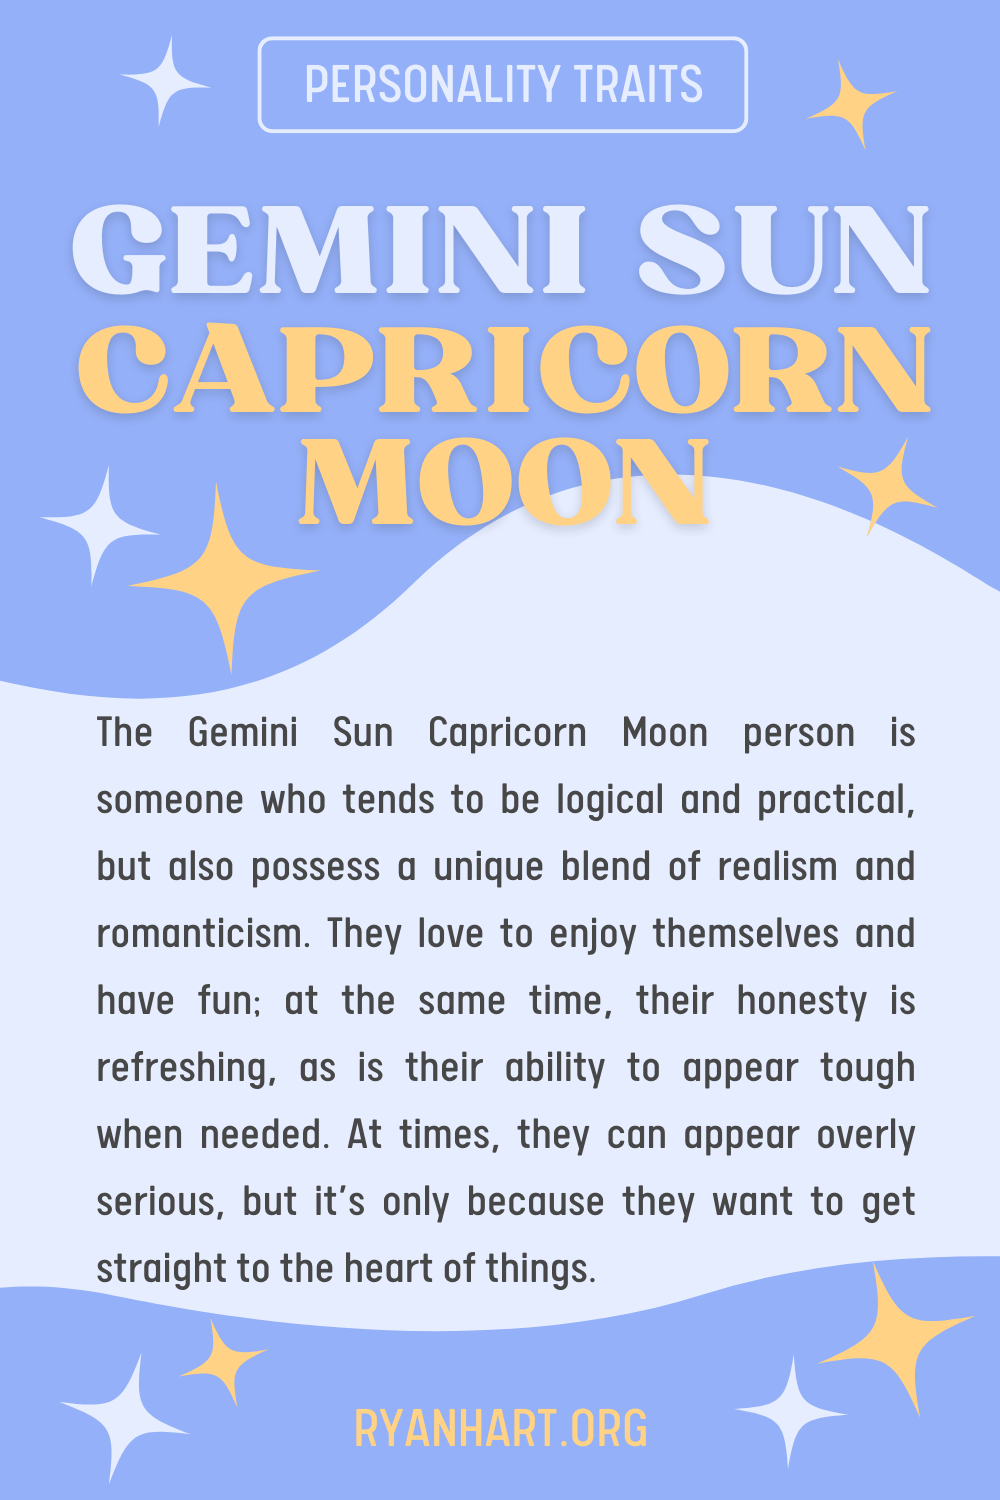  Bessons Sol Capricorn Lluna Trets de personalitat